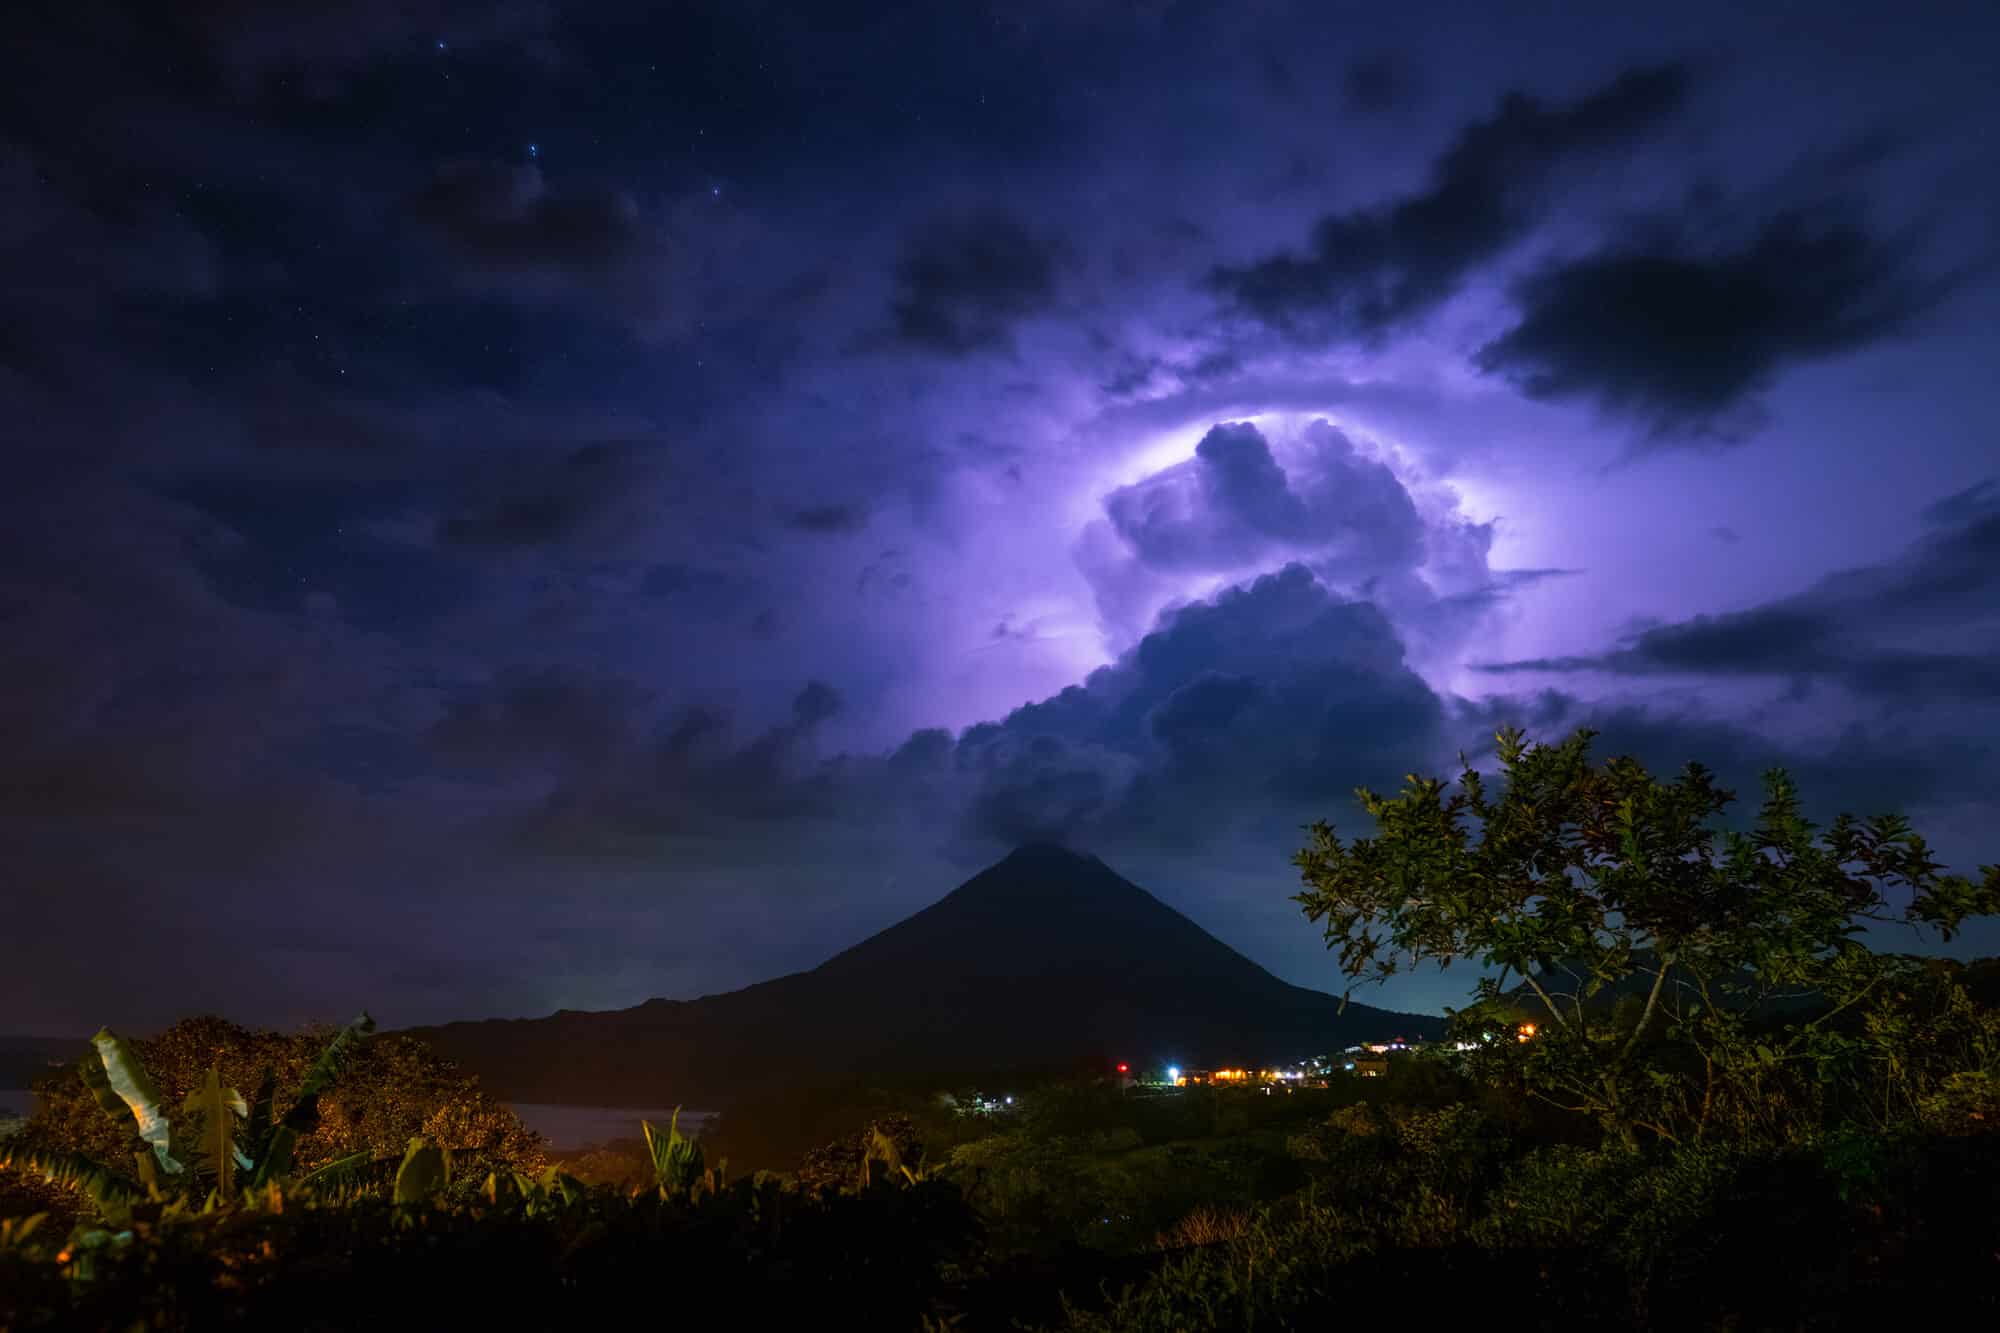 סופות ברקים מעל הג'ונגל בקוסטה ריקה. <a href="https://depositphotos.com. ">המחשה: depositphotos.com</a>